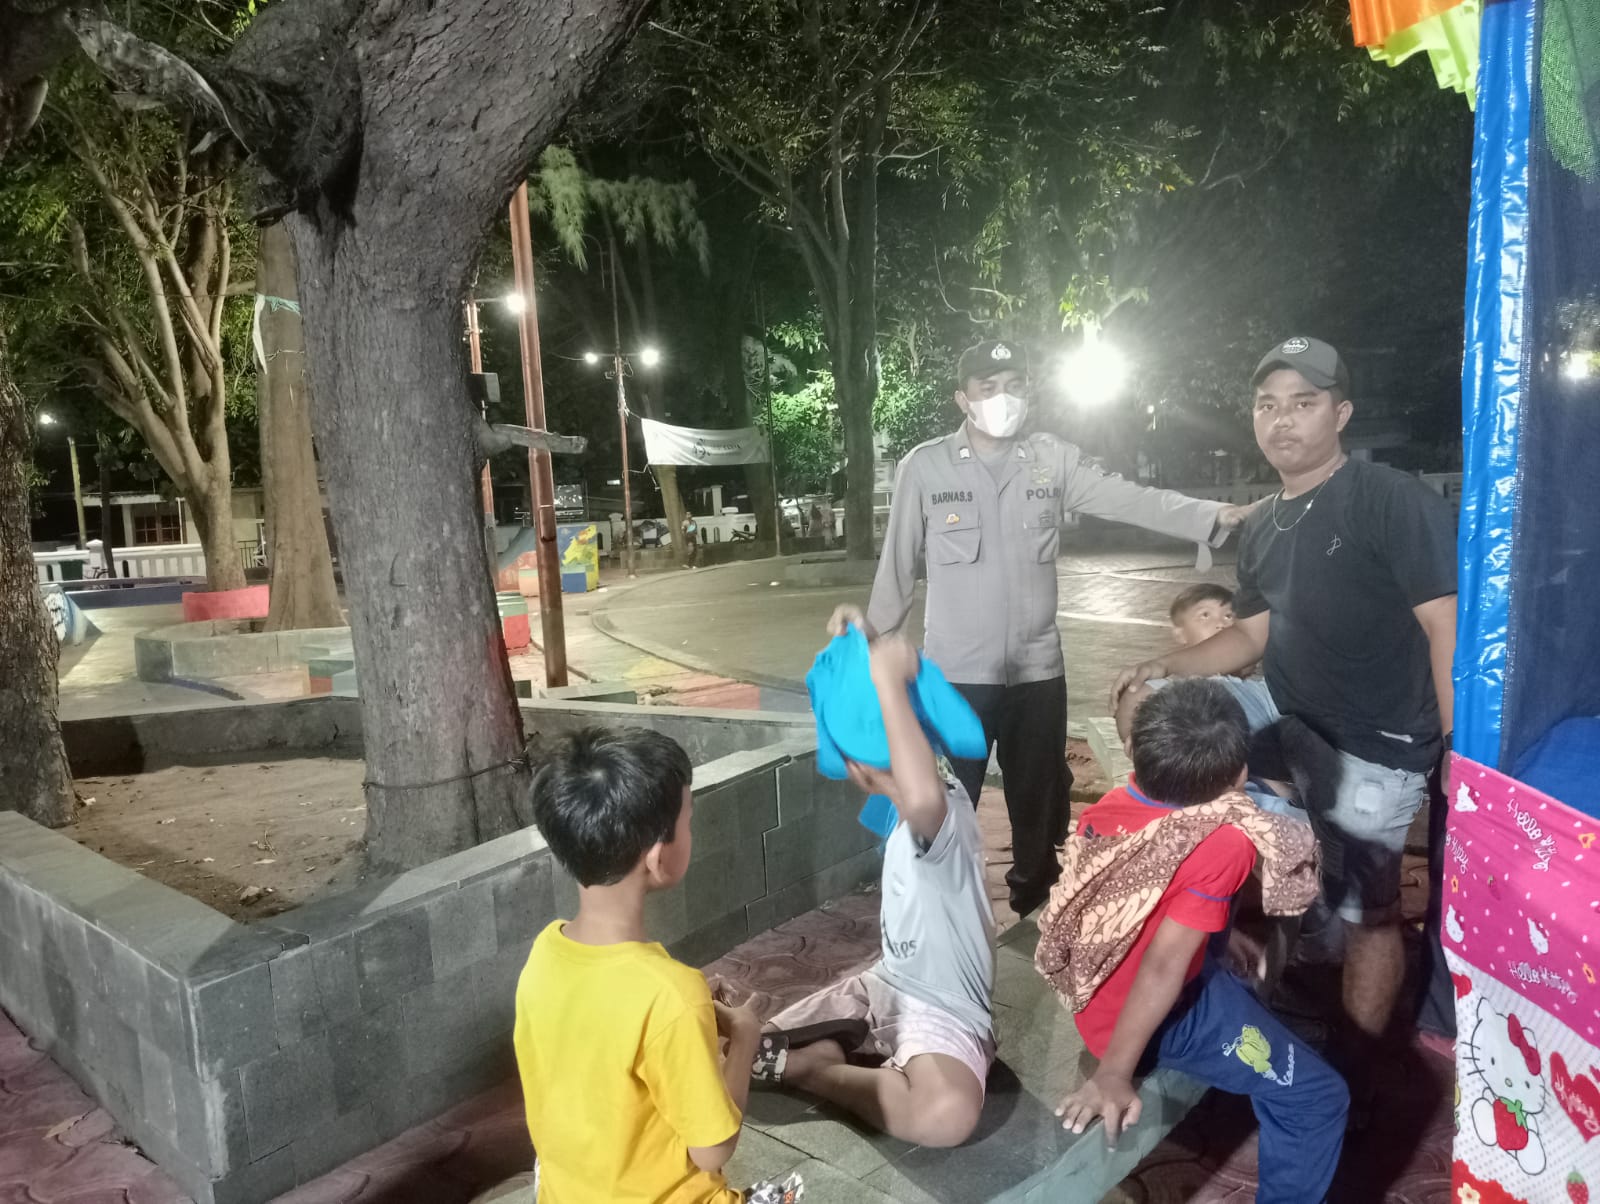 PolsubSektor Pulau Panggang Gelar Patroli Malam Polri Presisi, Fokus pada Penghimbauan dan Edukasi kepada Remaja